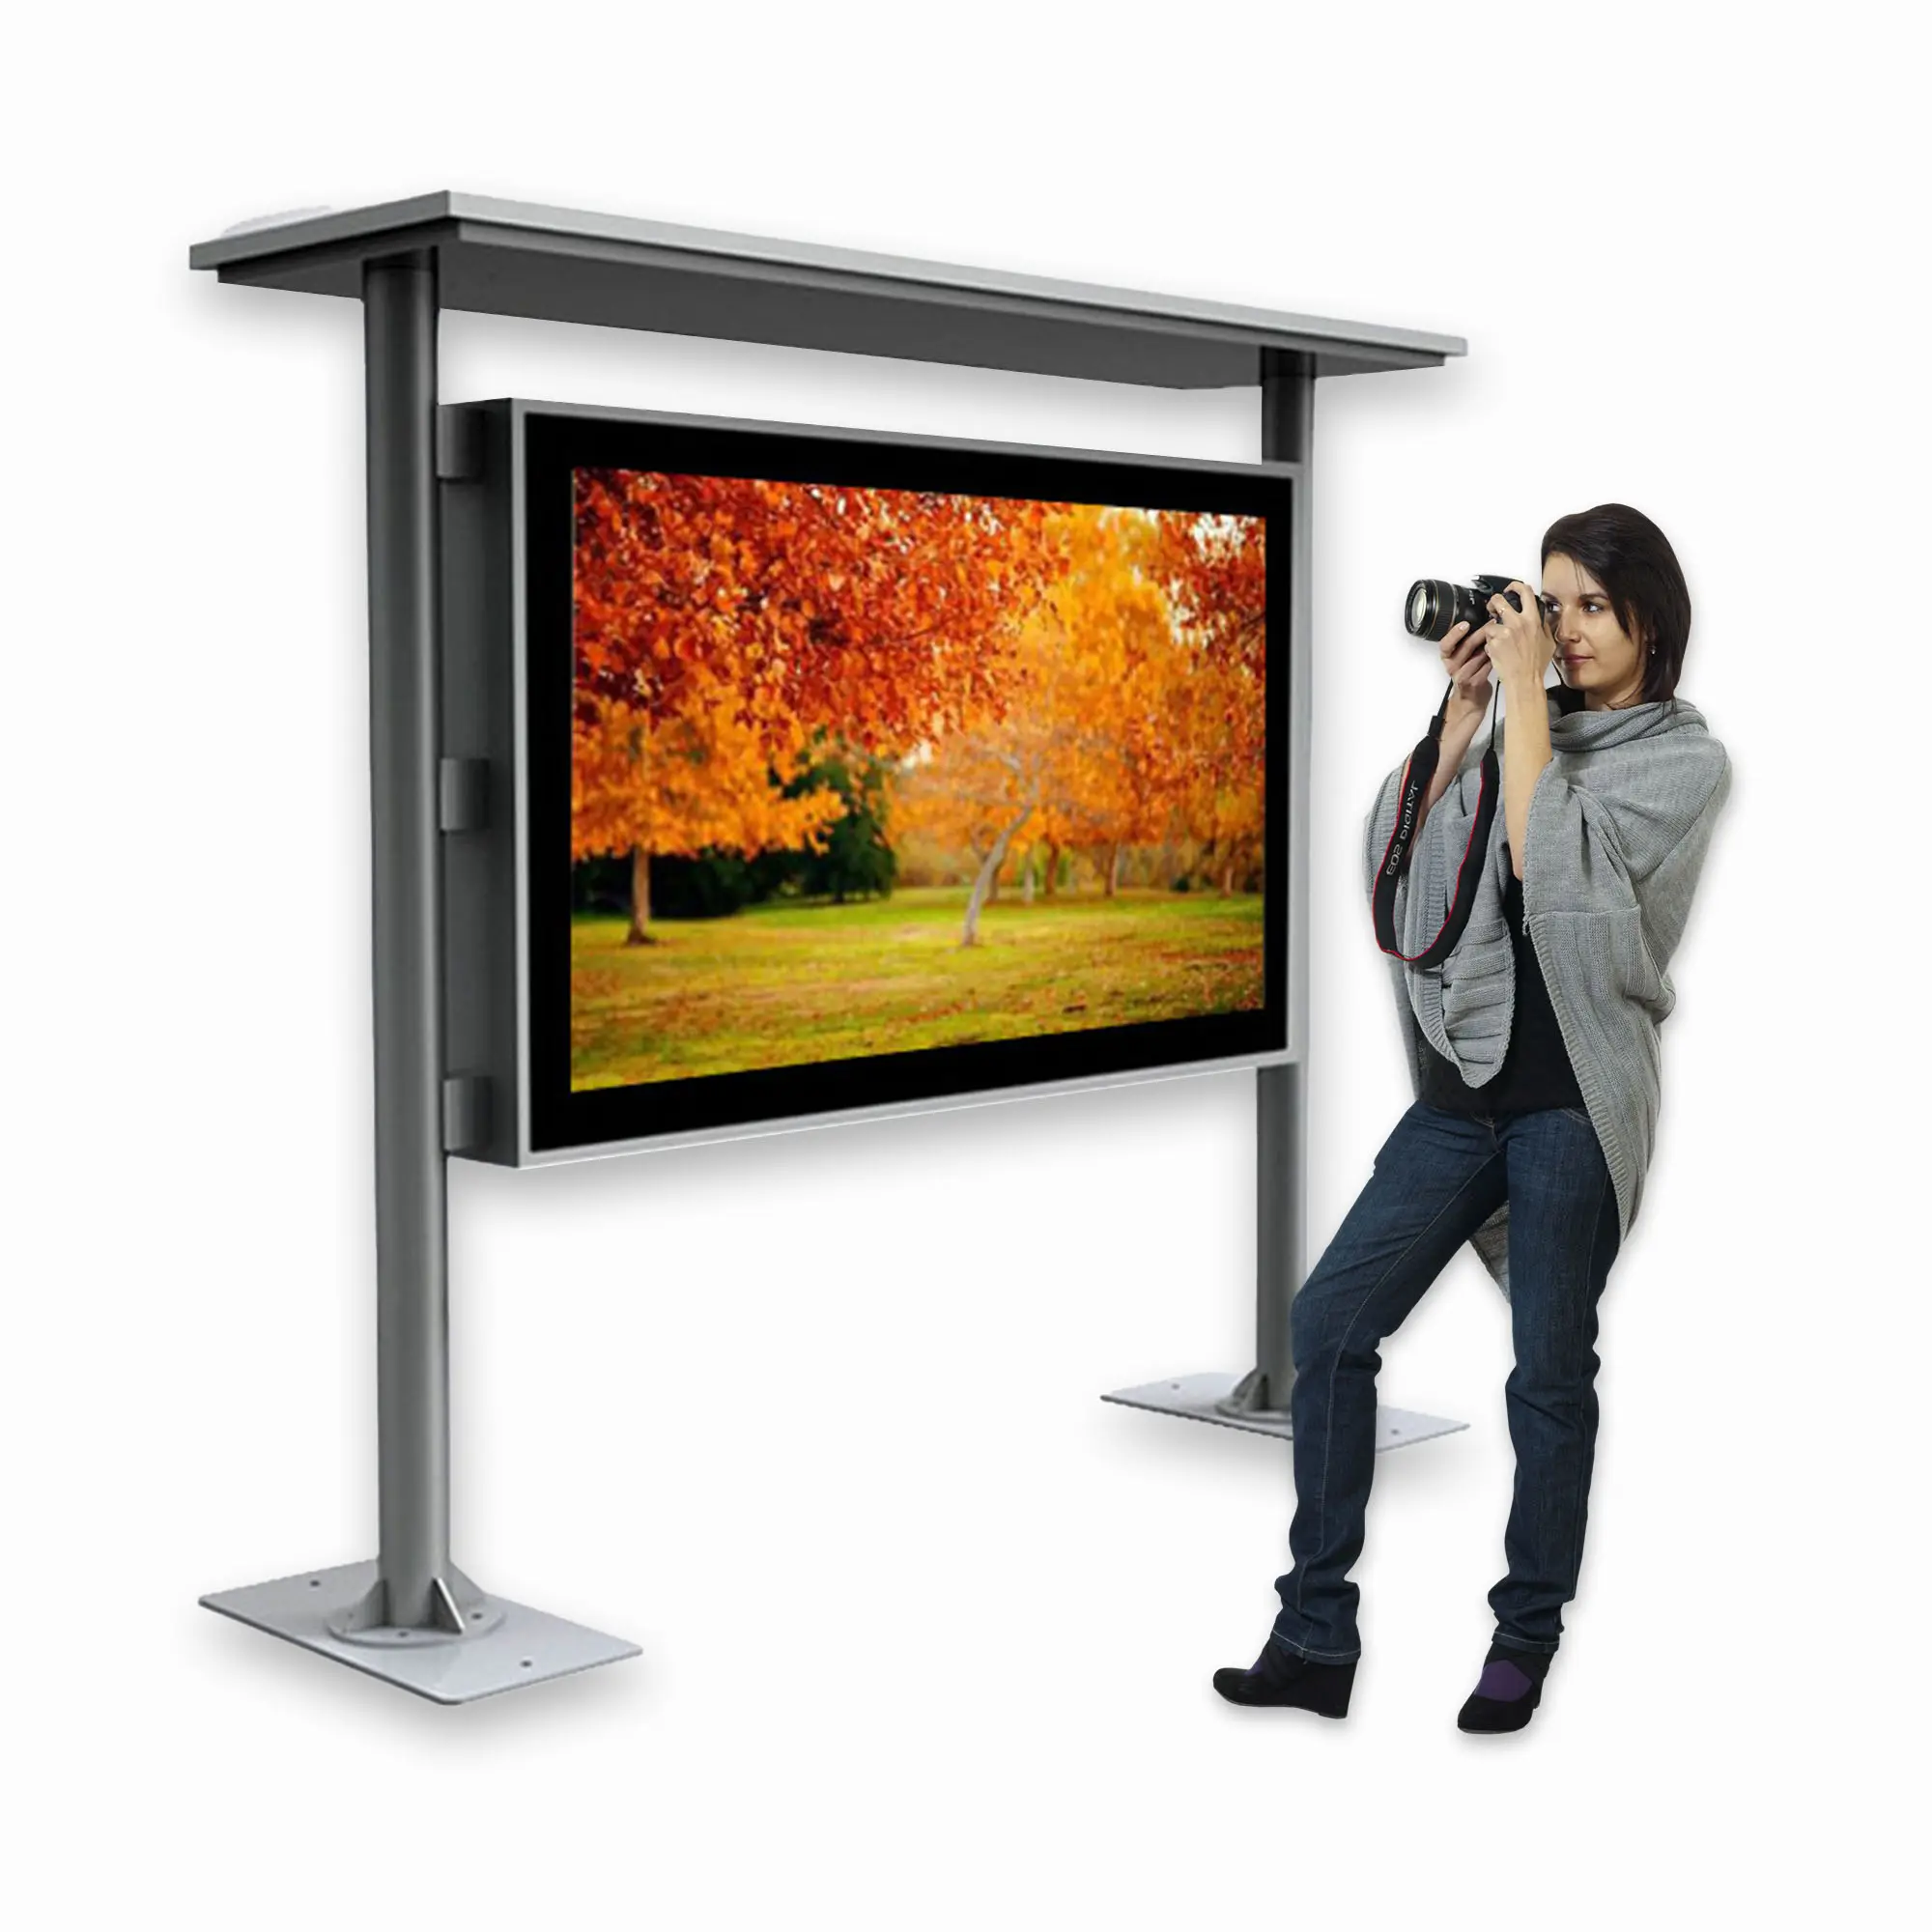 outdoor advertising display screens video large hd led outdoor display screen tv large display screen digital billboard